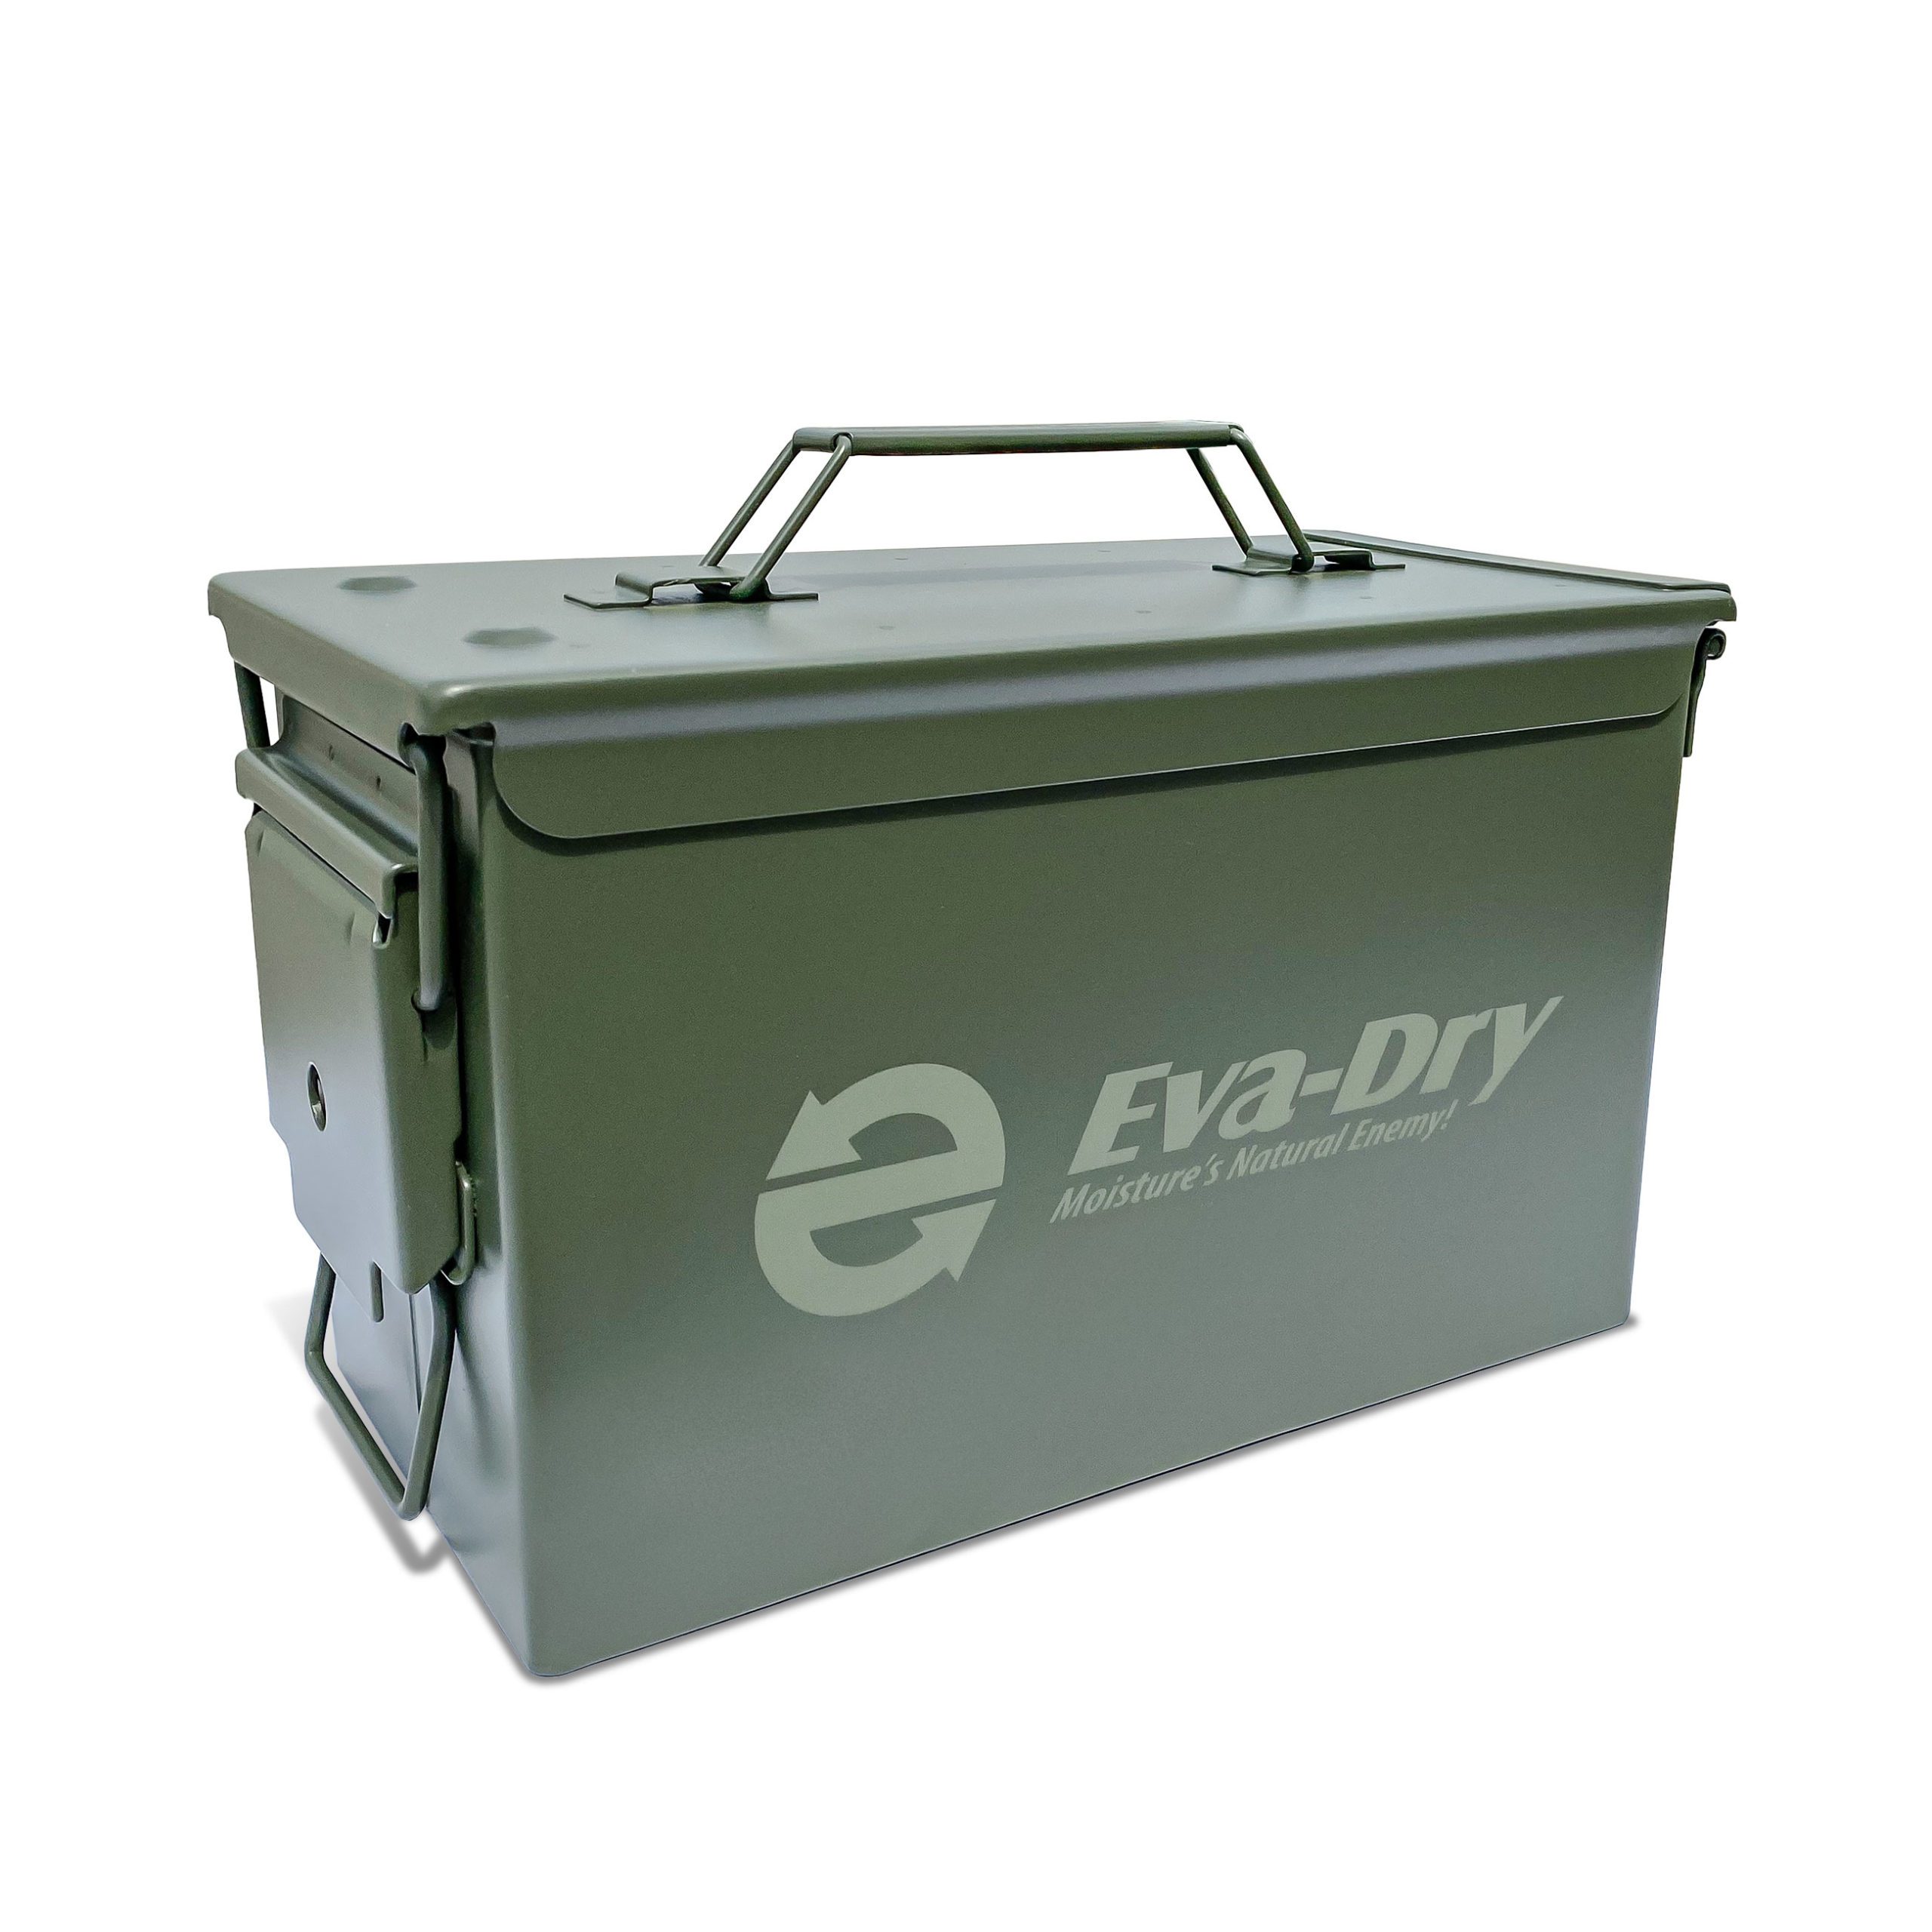 Waterproof Air-Tight Steel Storage Can - Eva-Dry